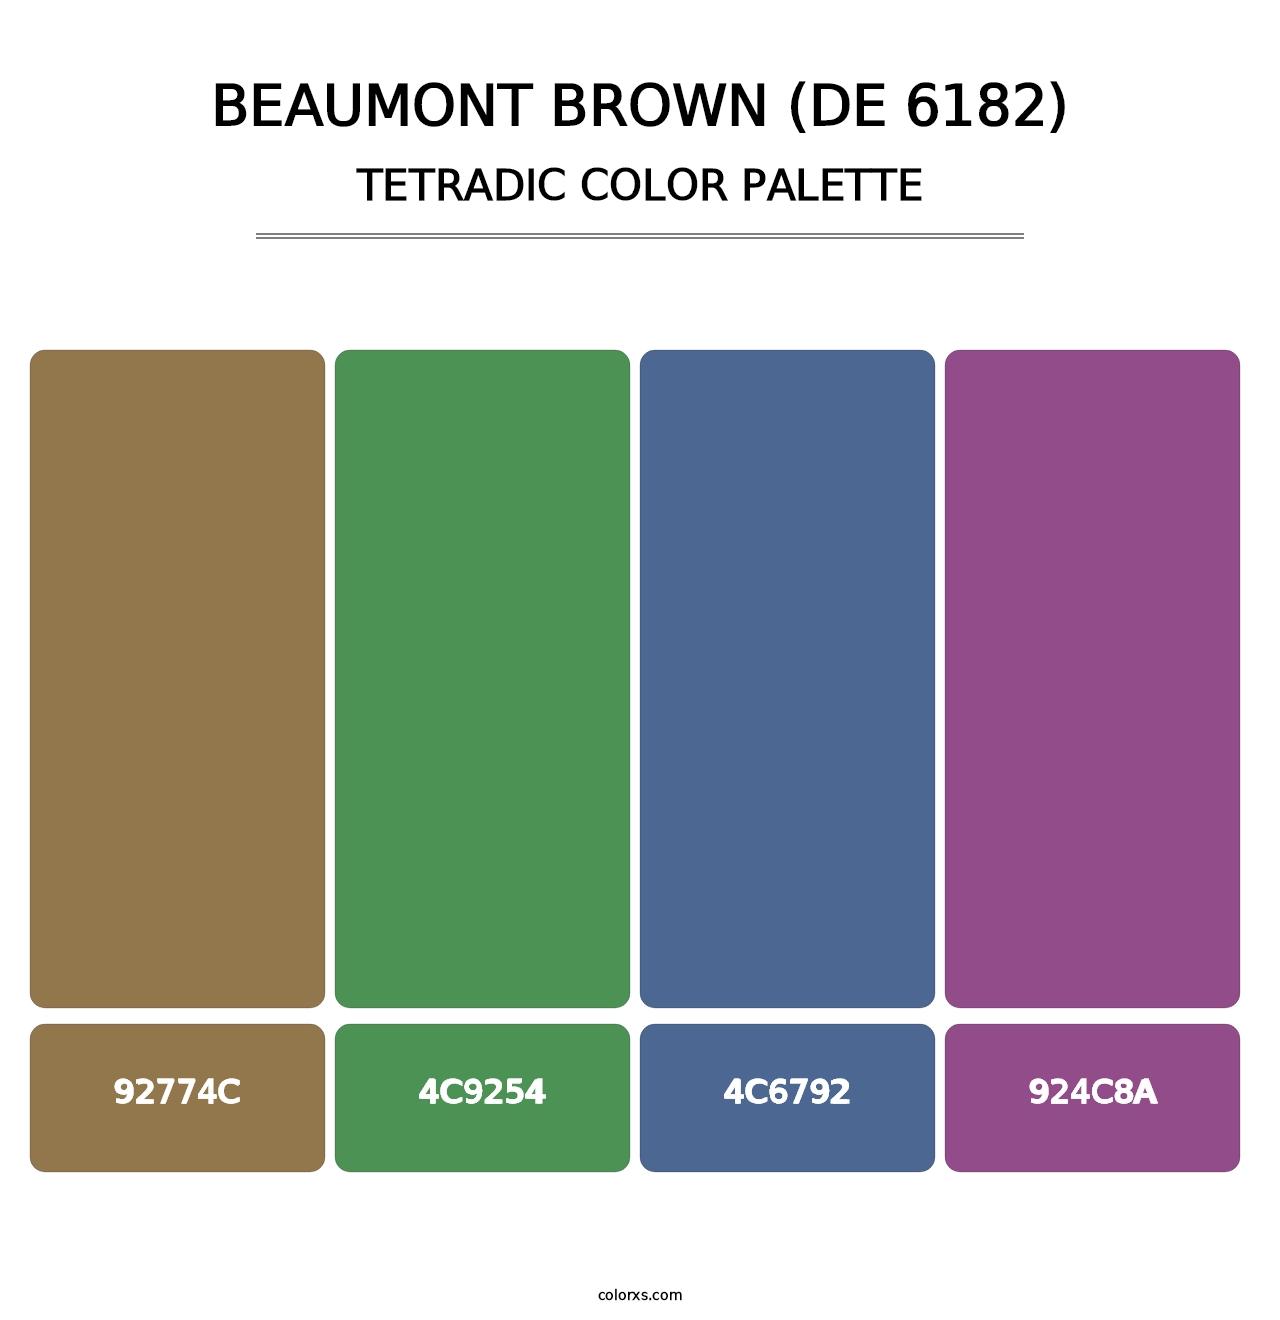 Beaumont Brown (DE 6182) - Tetradic Color Palette